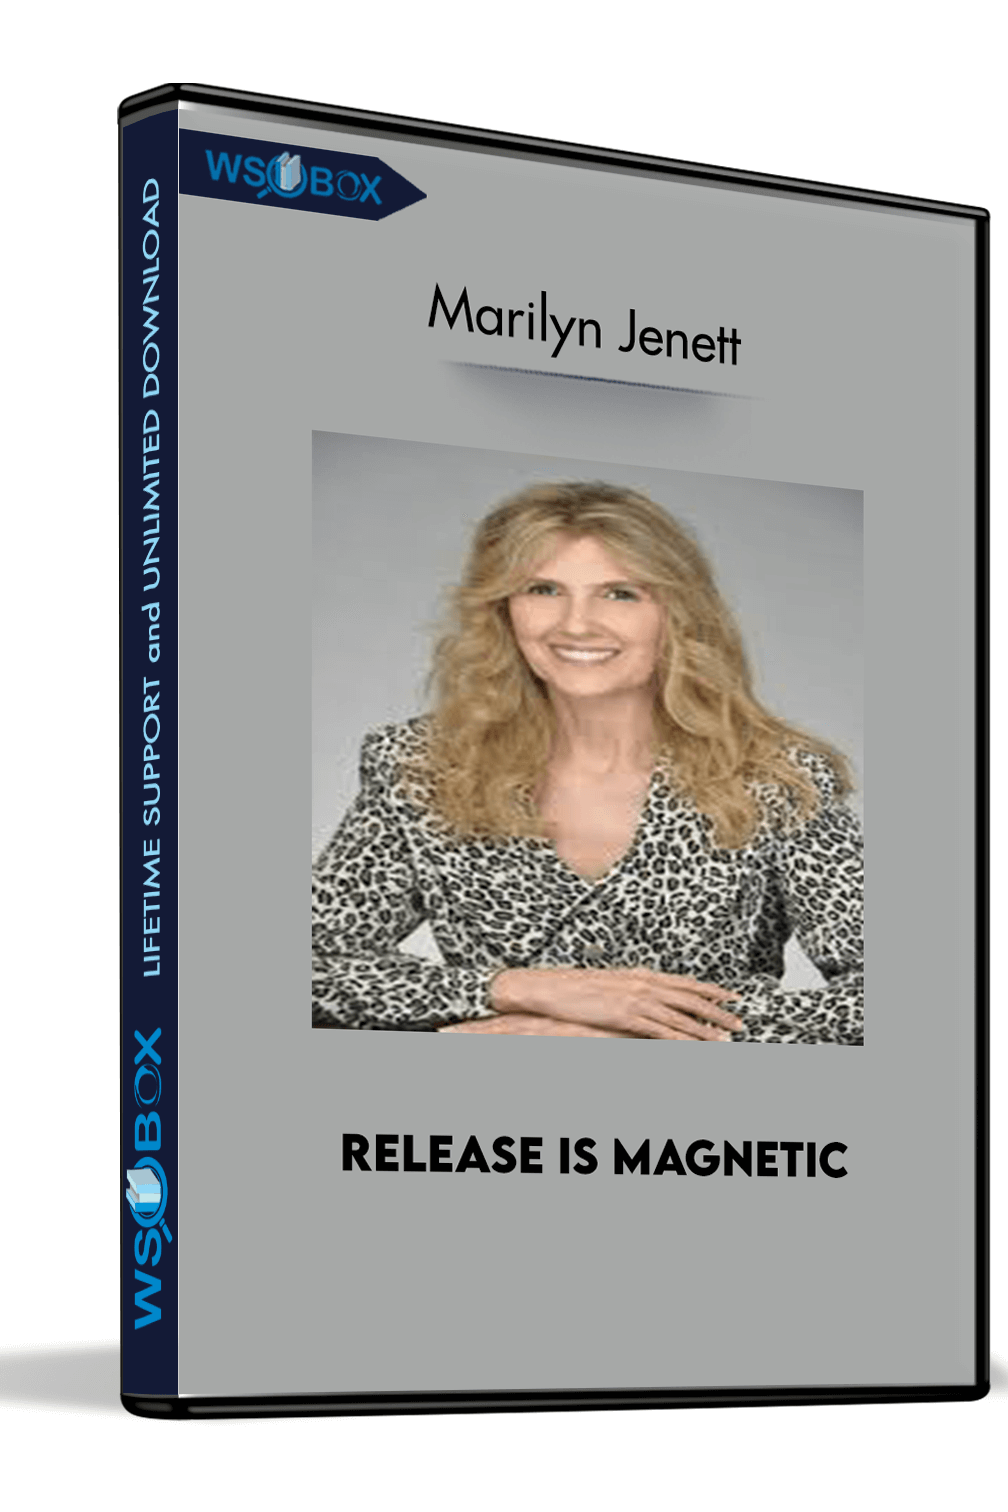 release-is-magnetic-marilyn-jenett